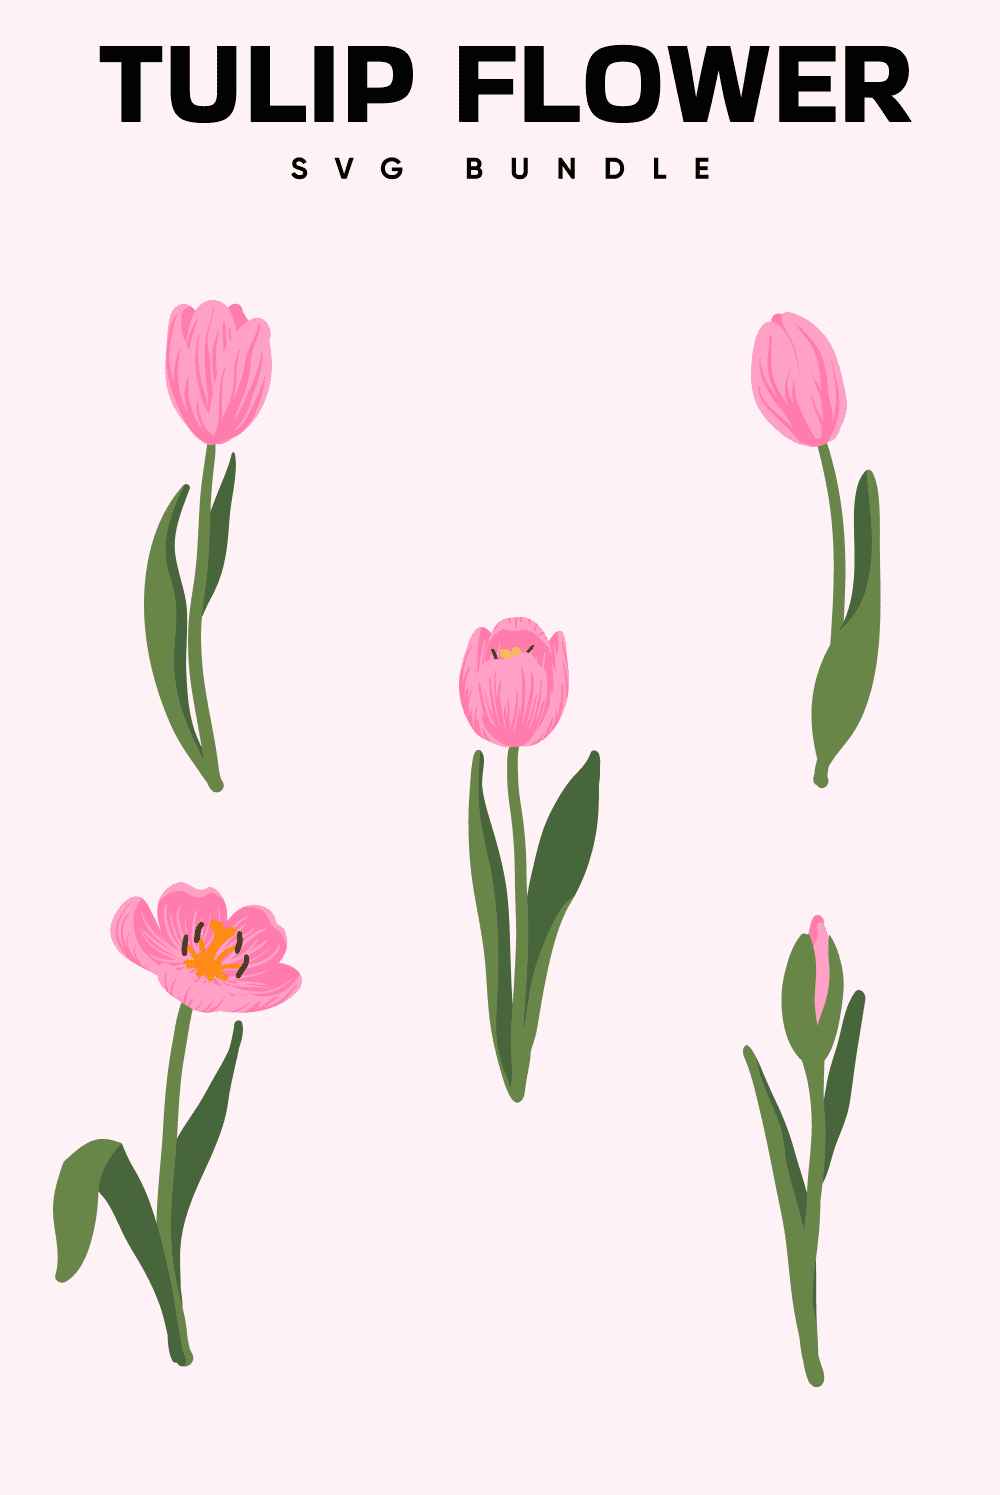 Tulip Flower SVG Bundle, picture pinterest 1000x1500.